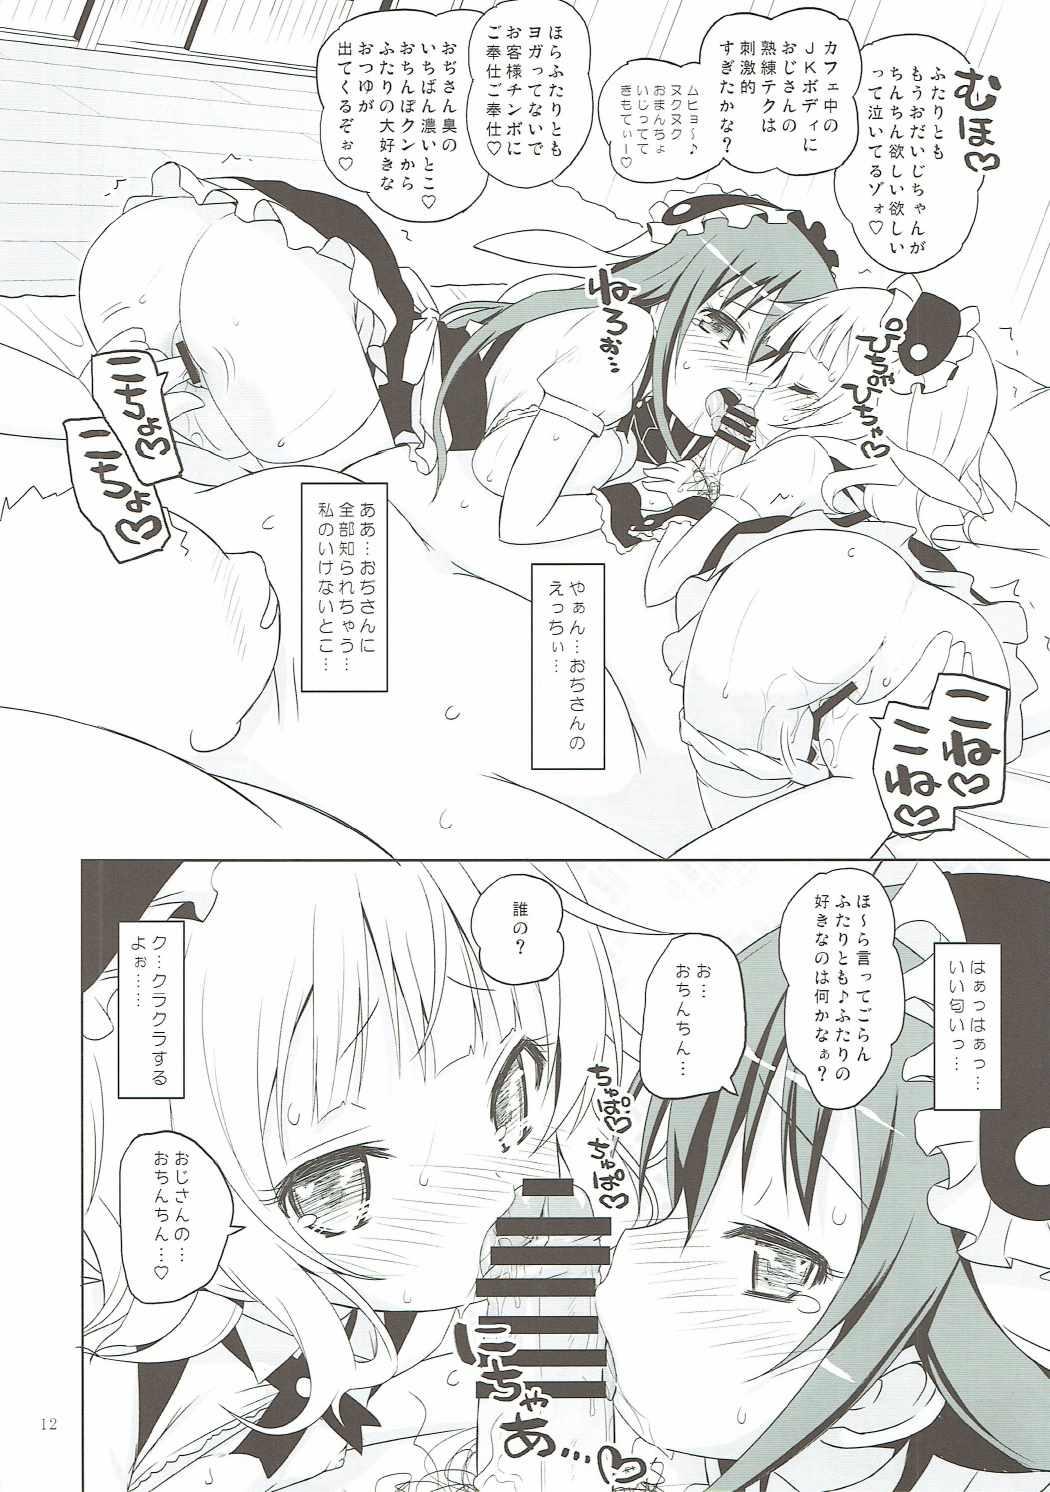 Prostituta Sharo-chan VS Caffeine Otoko - Gochuumon wa usagi desu ka Girlsfucking - Page 11